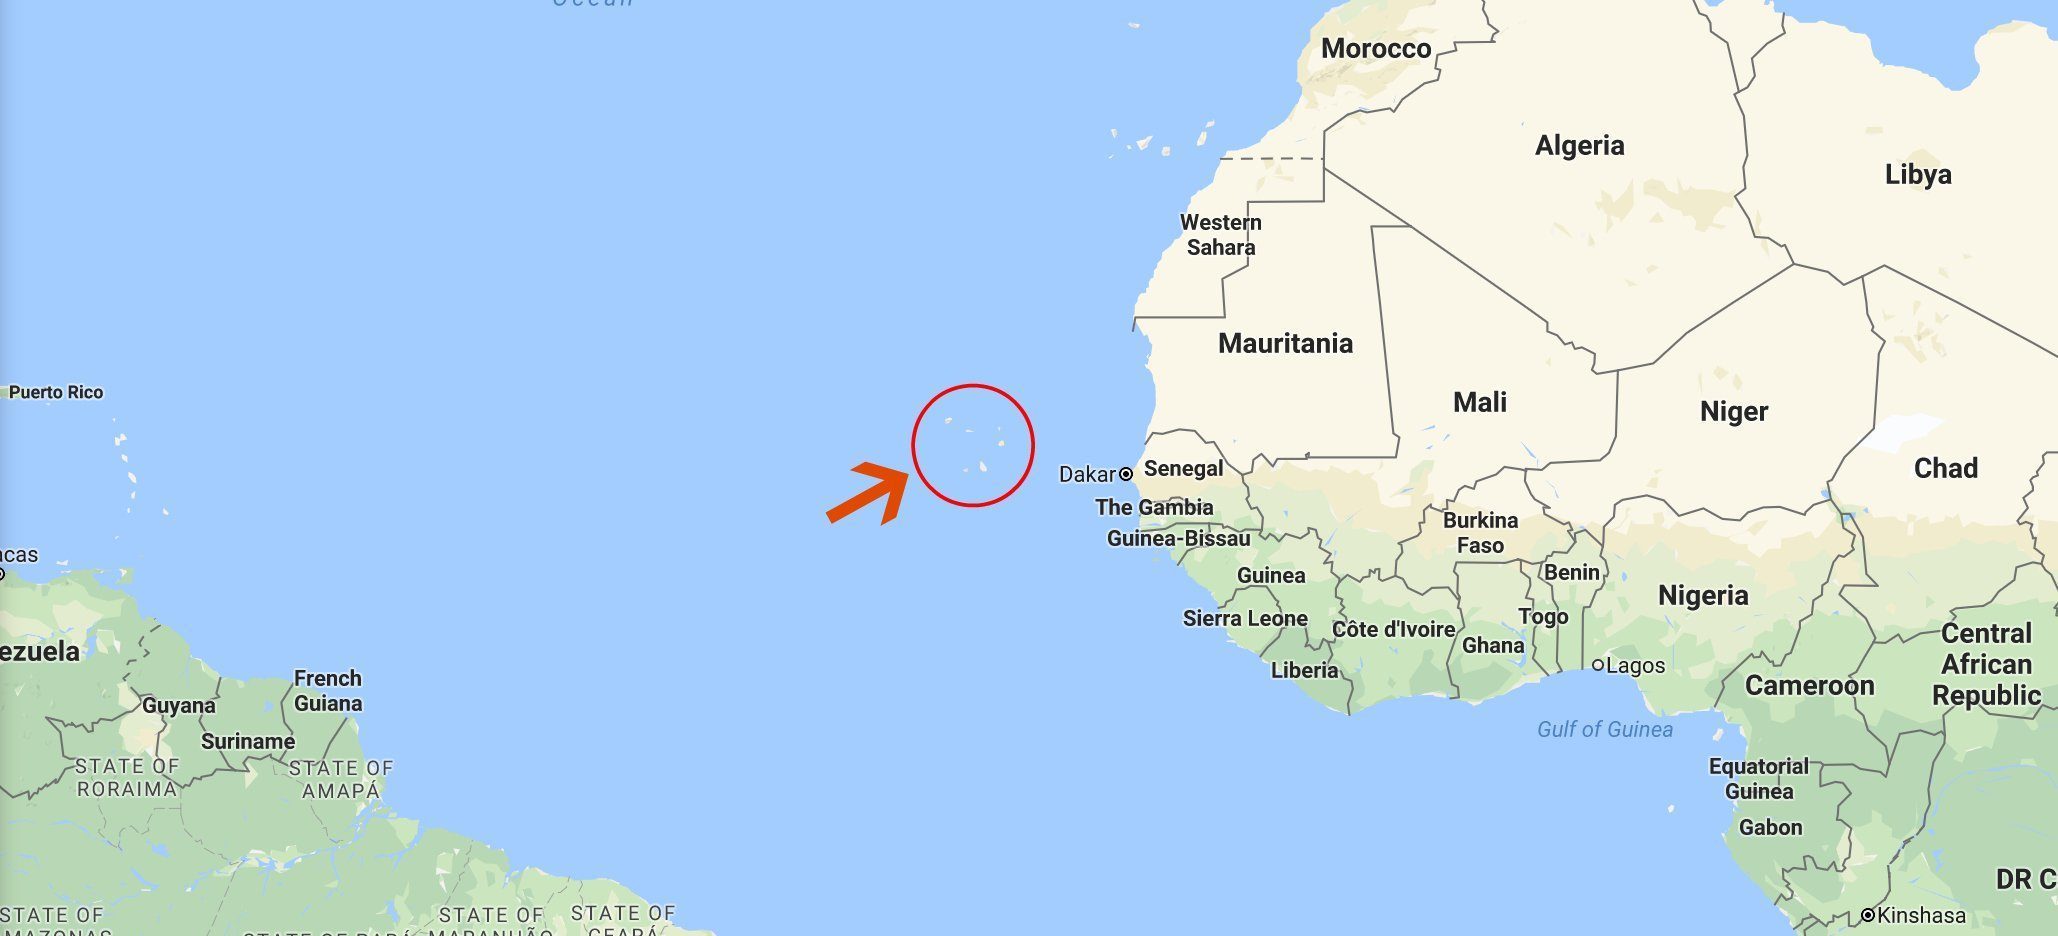 Čudovišne oluje poput Irme počinju blizu Zelenortskih ostrva u Africi , kažu istraživači